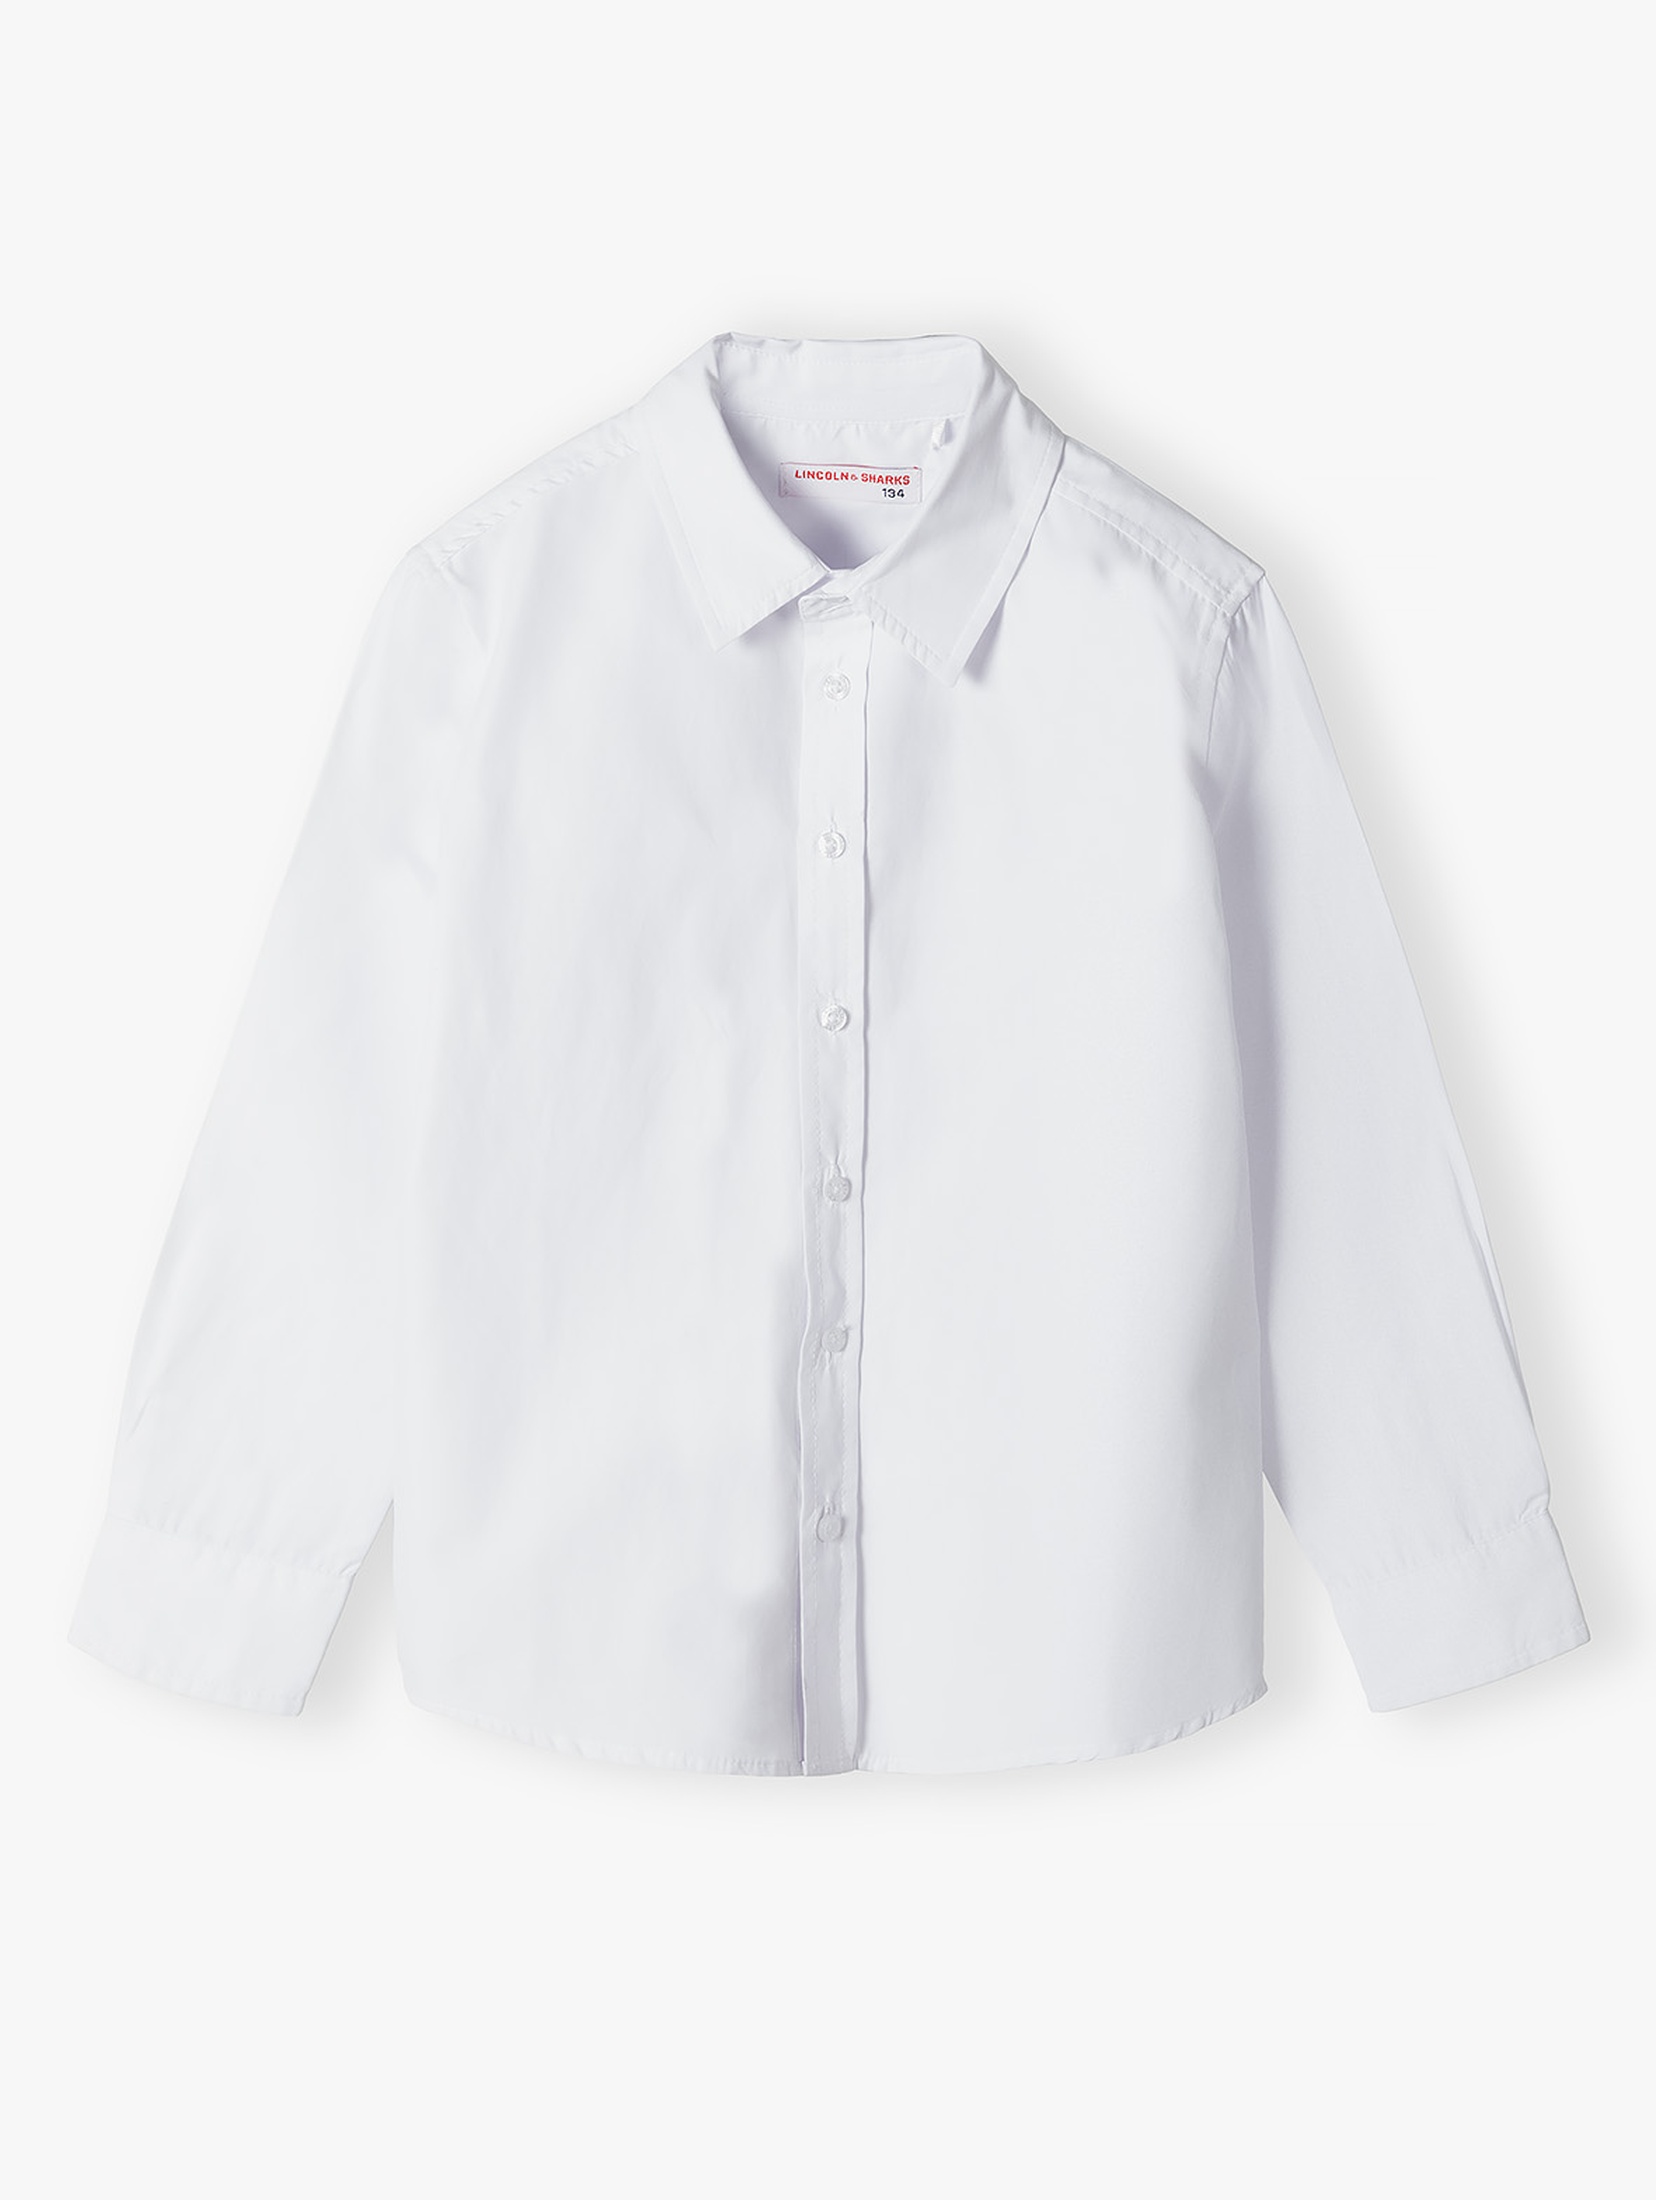 Biała klasyczna koszula dla chłopca - Lincoln&Sharks